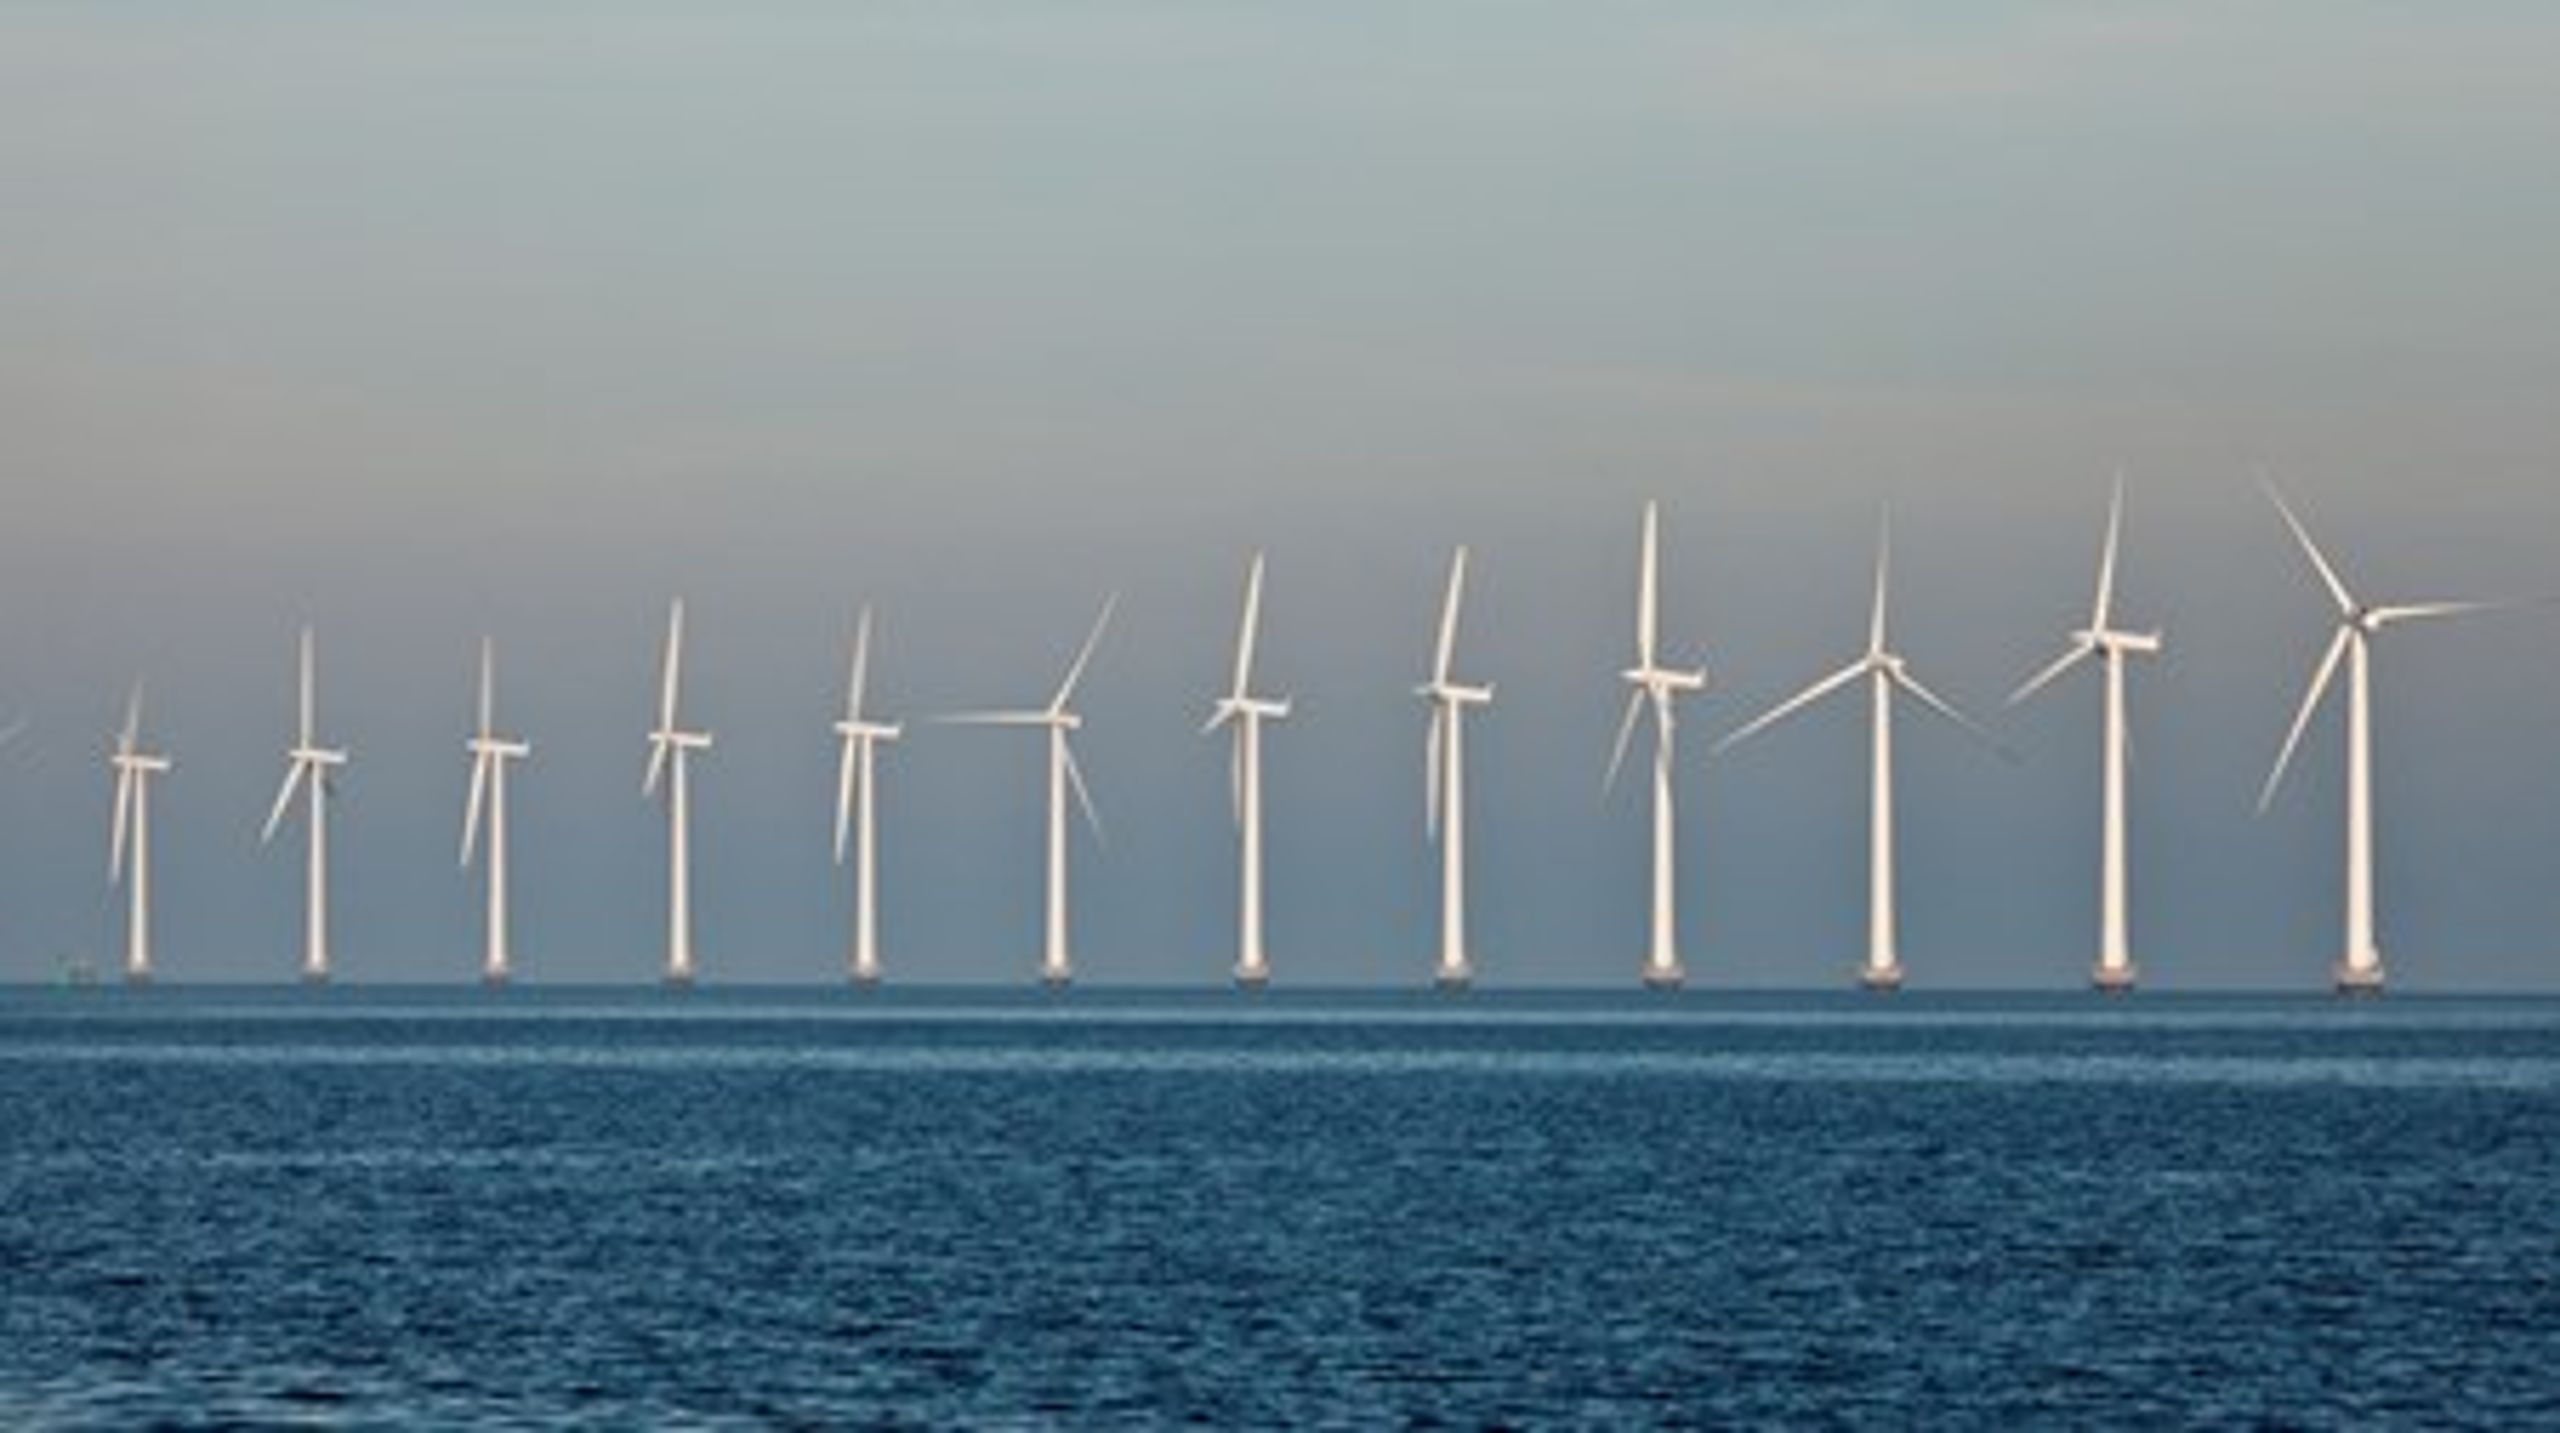 Eksport af vind er reelt en håndsrækning til vindmøllesektoren om at komme ind i kampen og medvirke til at sætte forbrug af grøn strøm i Danmark på dagsordenen, skriver Dansk Fjernvarme og Grøn Energi.